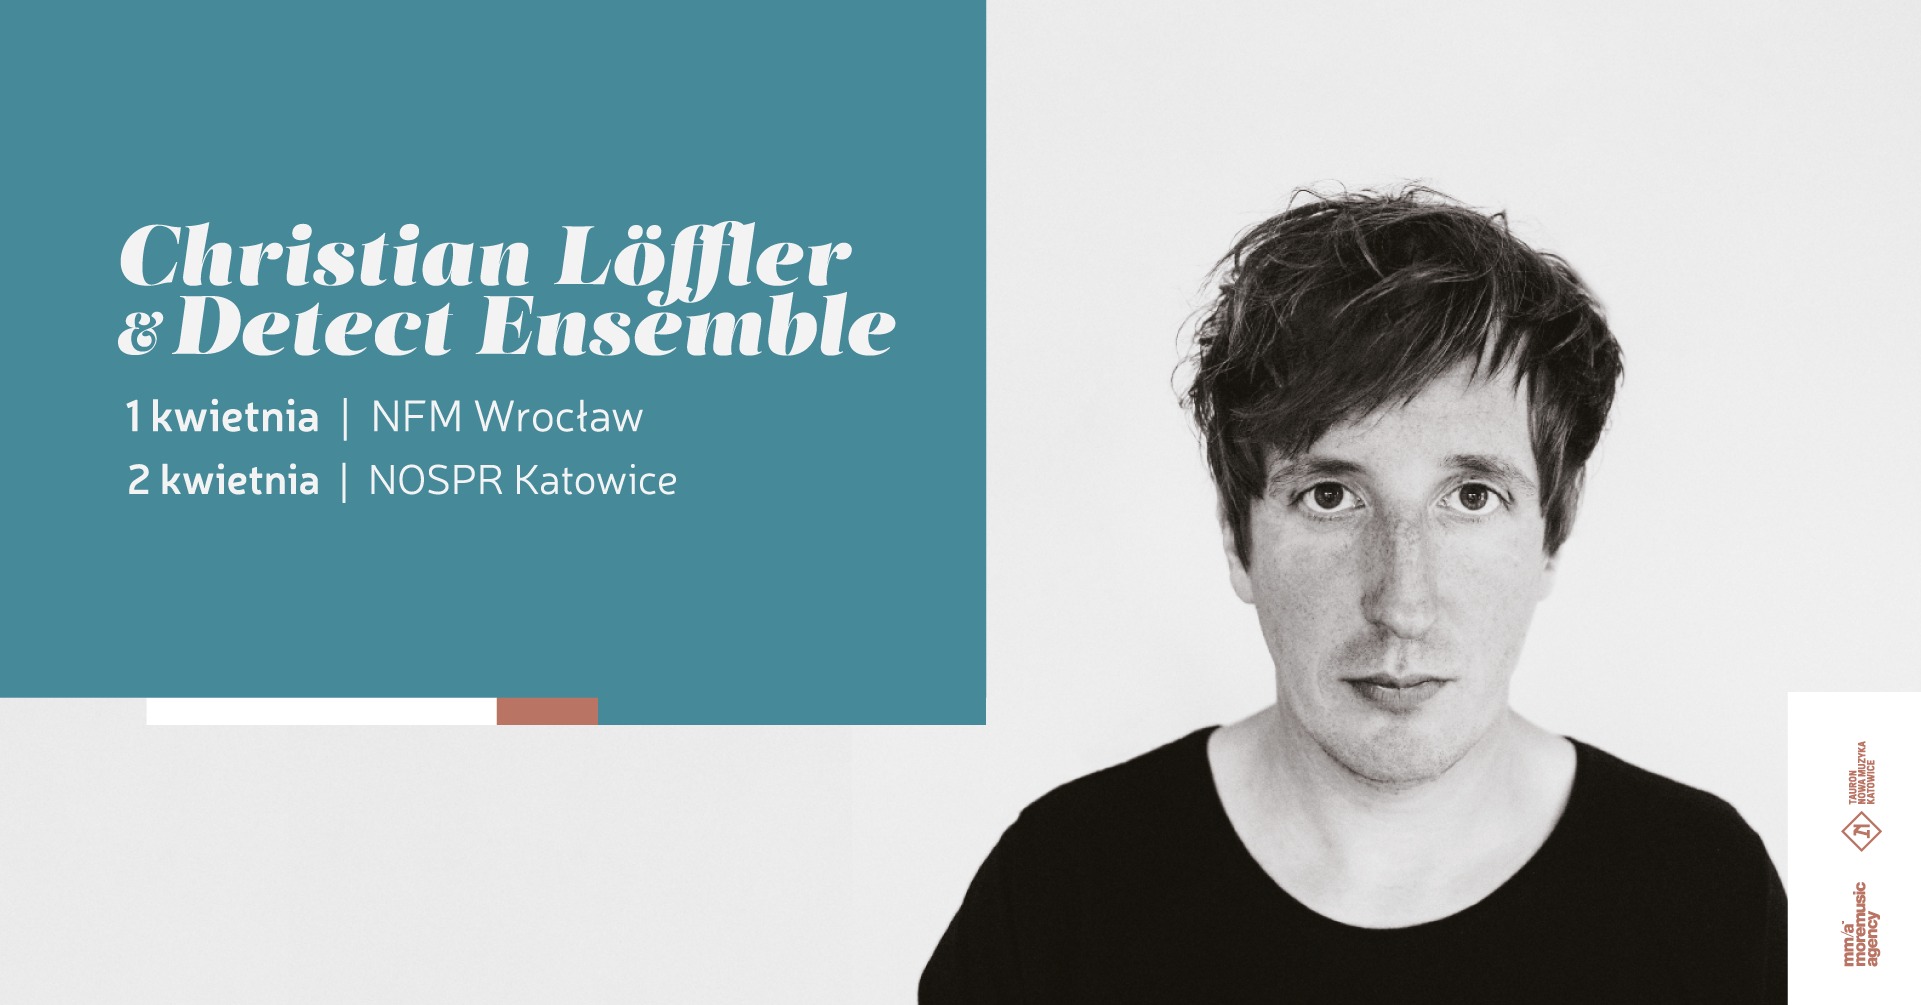 Christian Löffler zaprezentuje elektroniczne aranżacje klasycznych utworów na dwóch koncertach w Polsce